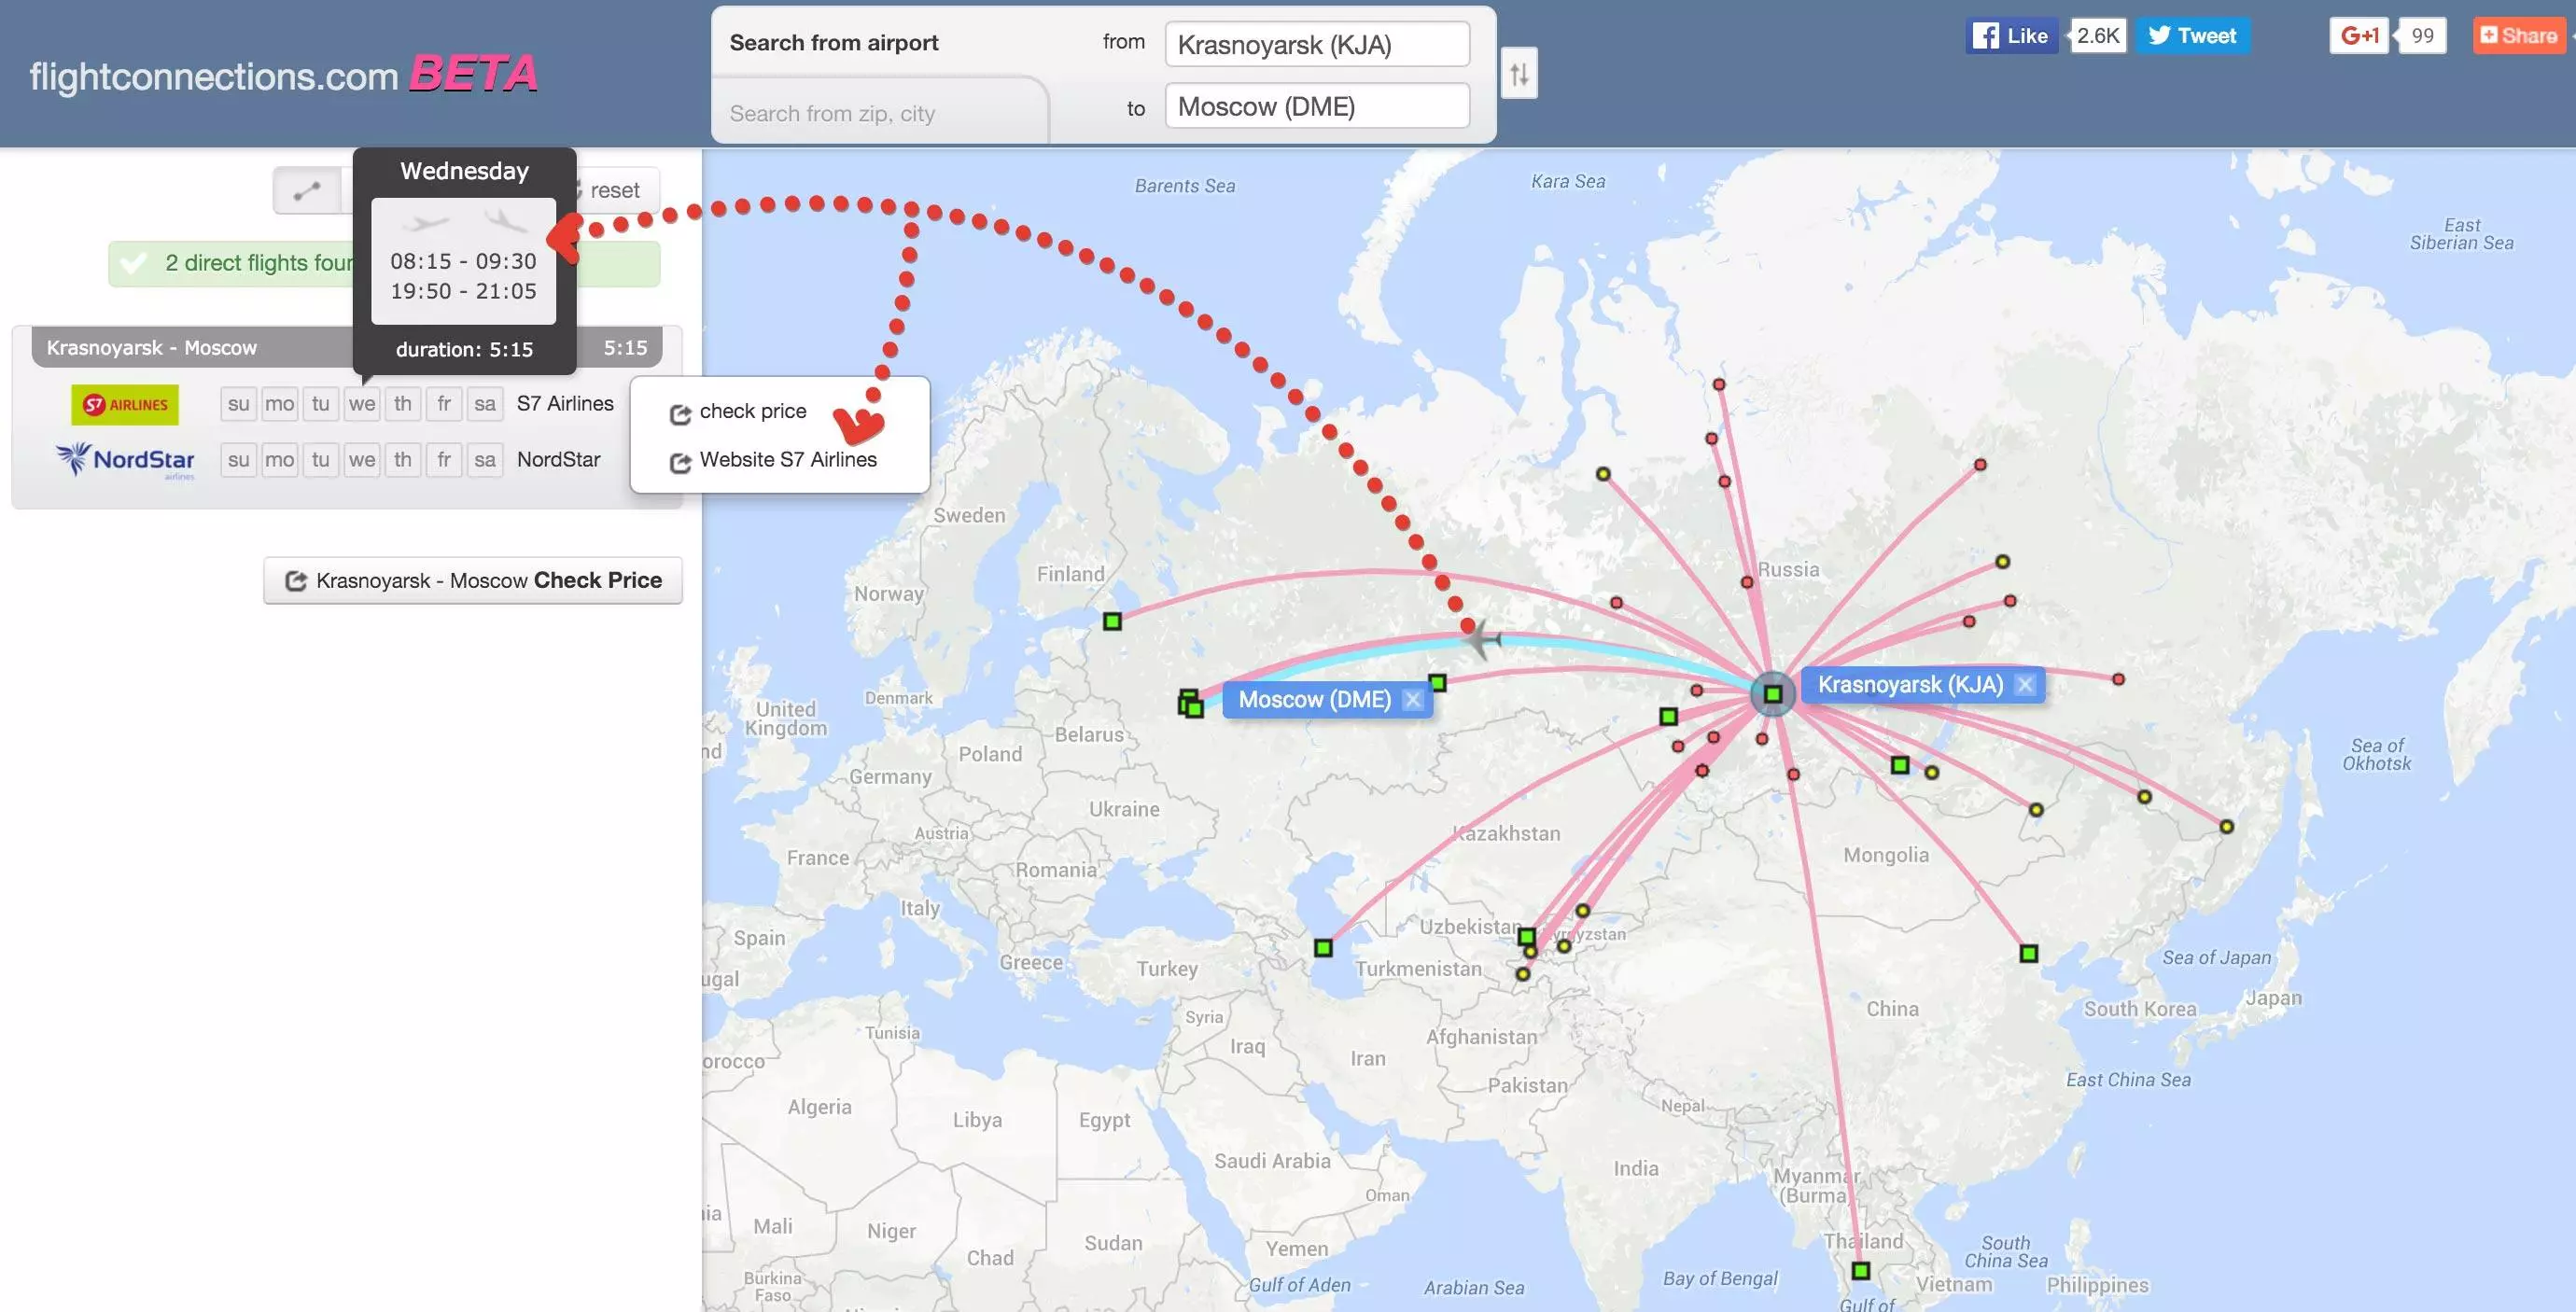 Аэропорт усинск: расписание рейсов на онлайн-табло, фото, отзывы и адрес